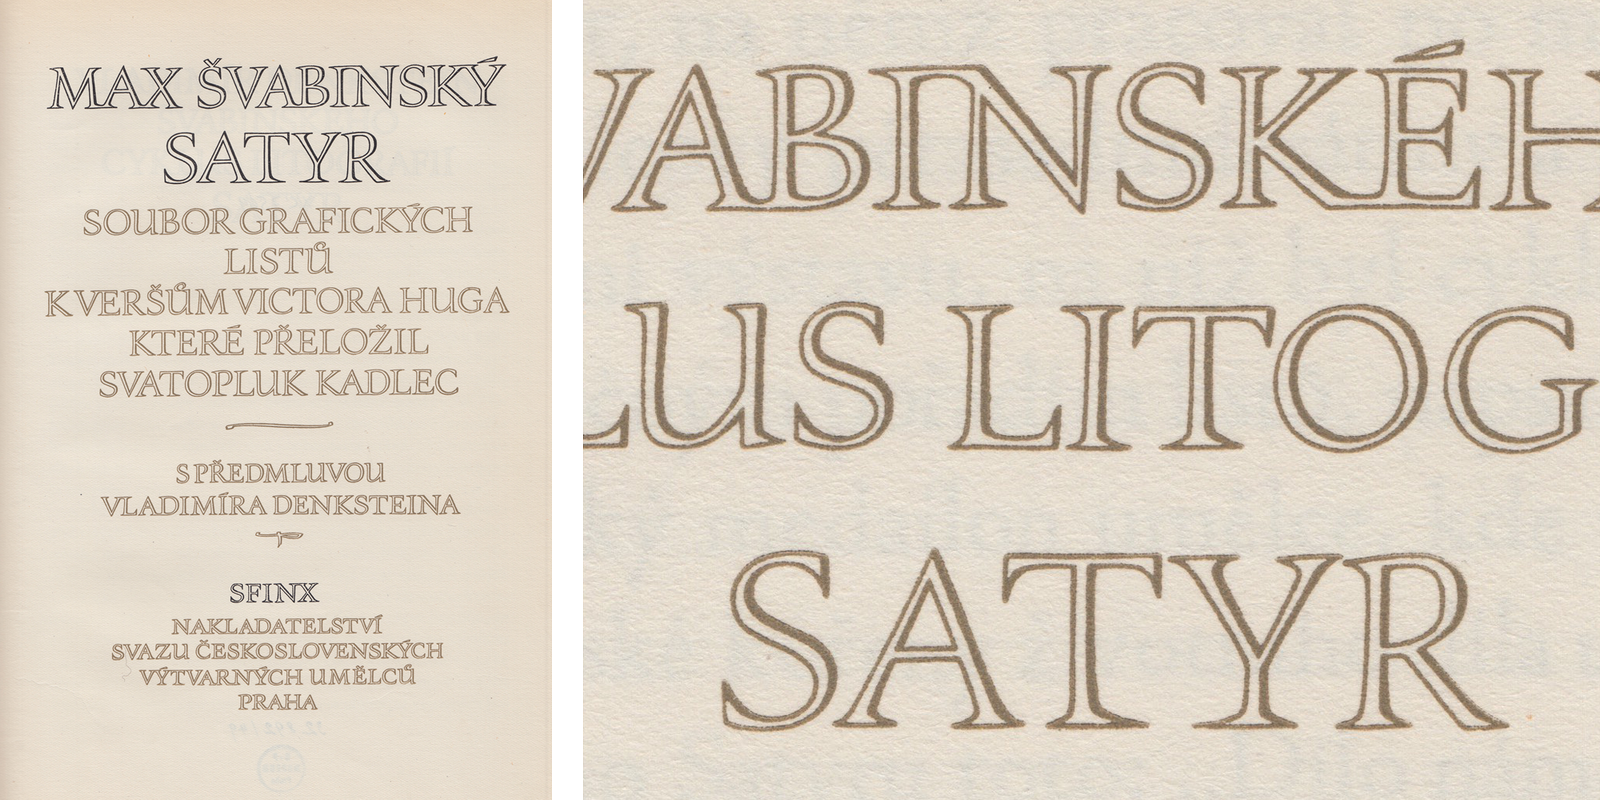 Titulní a předělový list publikace Satyr s Menhartovým titulním nápisem s neobvyklými ligaturami a charakteristickým stínováním. Vydalo nakladatelství Sfinx v Praze, 1949